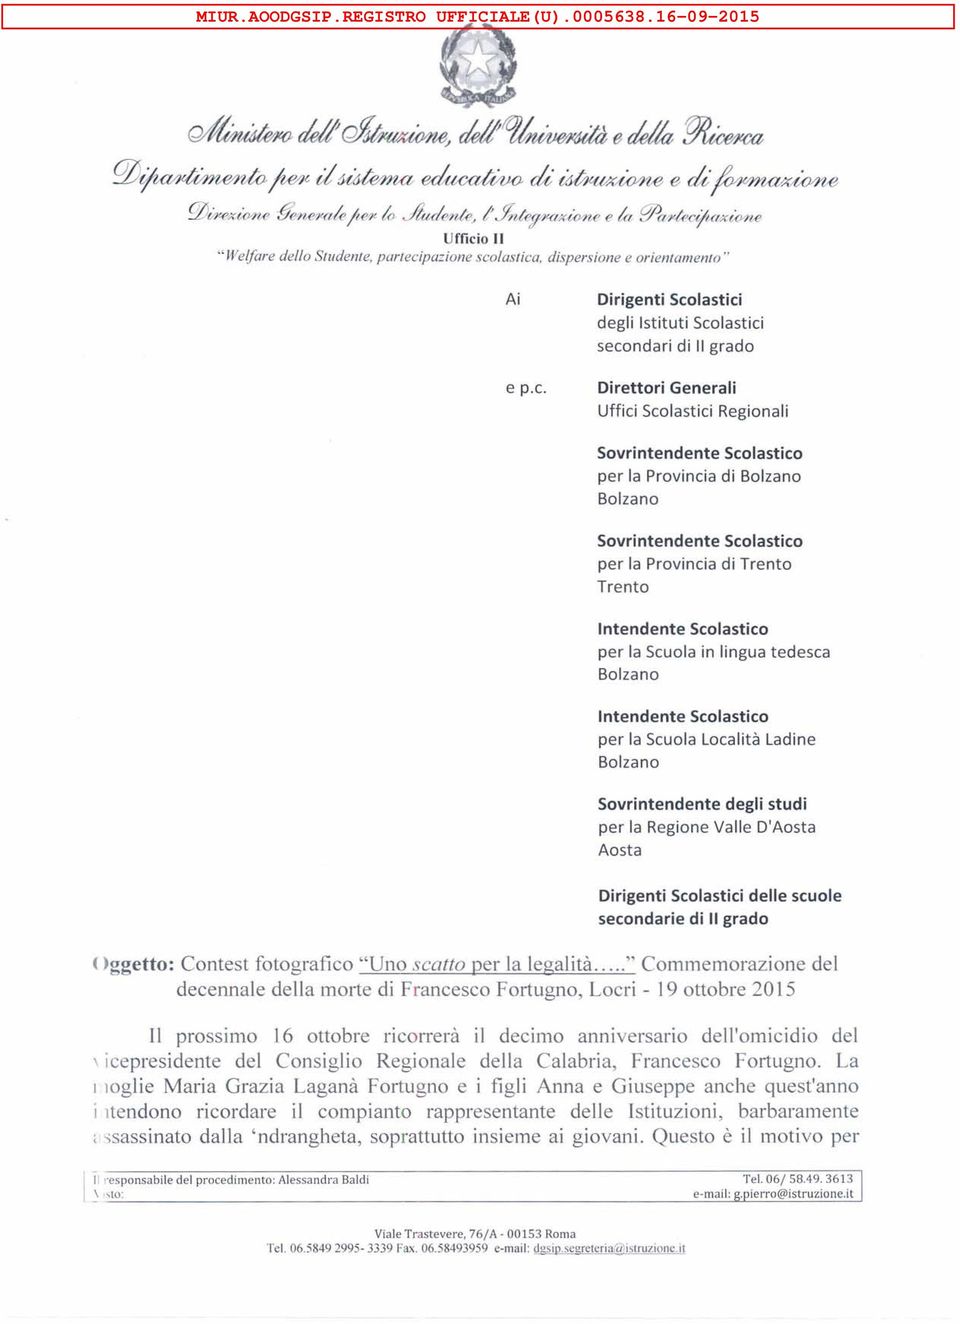 Istituti Scolastici secondari di Il grado Direttori Generali Uffici Scolastici Regionali Sovrintendente Scolastico per la Provincia di Sovrintendente Scolastico per la Provincia di Trento Trento